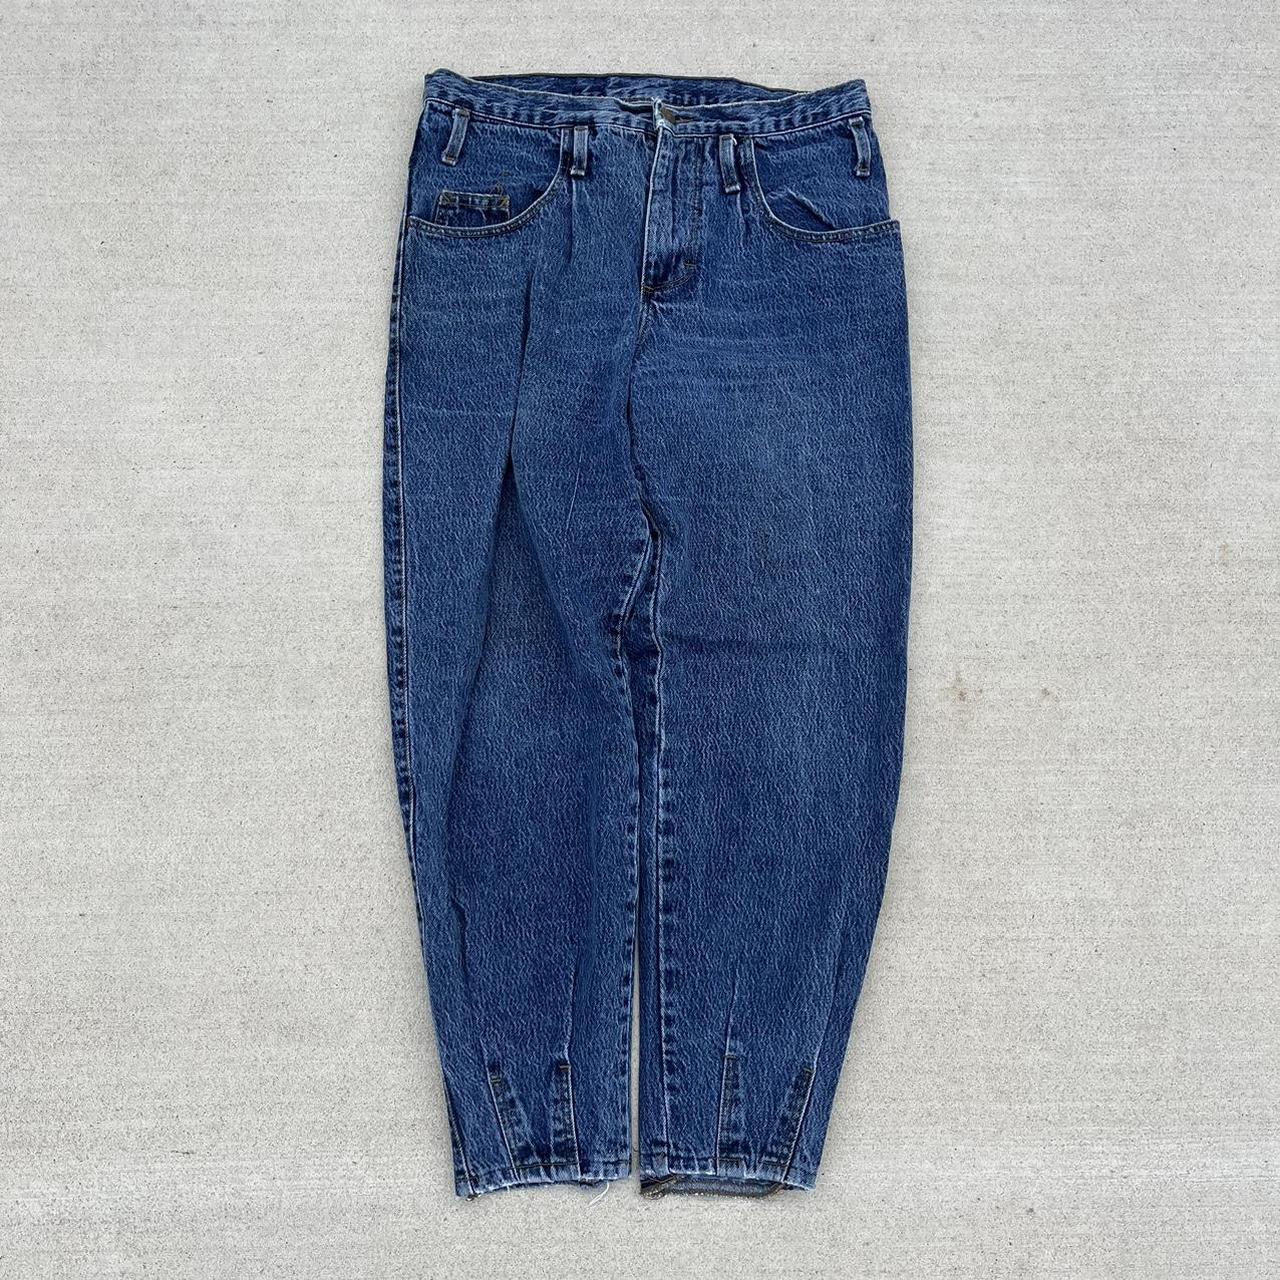 Vintage 80s Zena Stone Wash Jeans Vintage 80s... - Depop